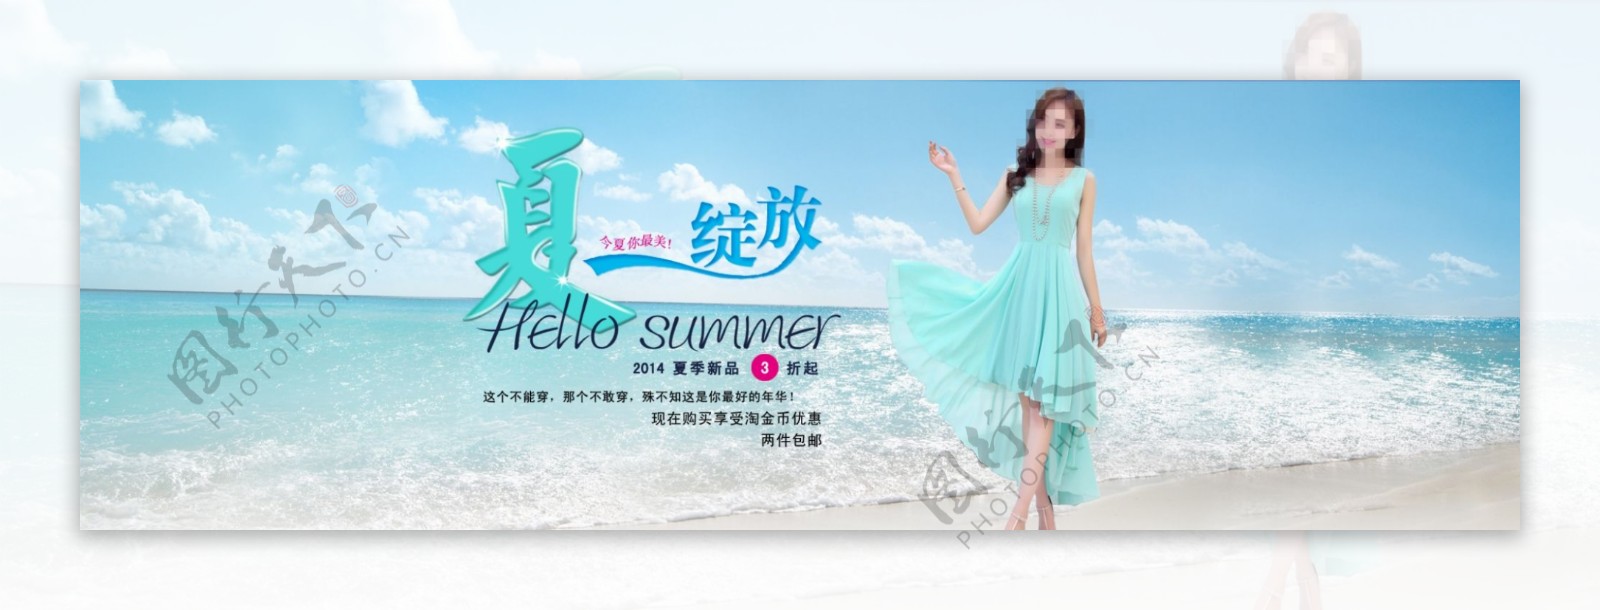 女装夏季海报促销模板PSD下载